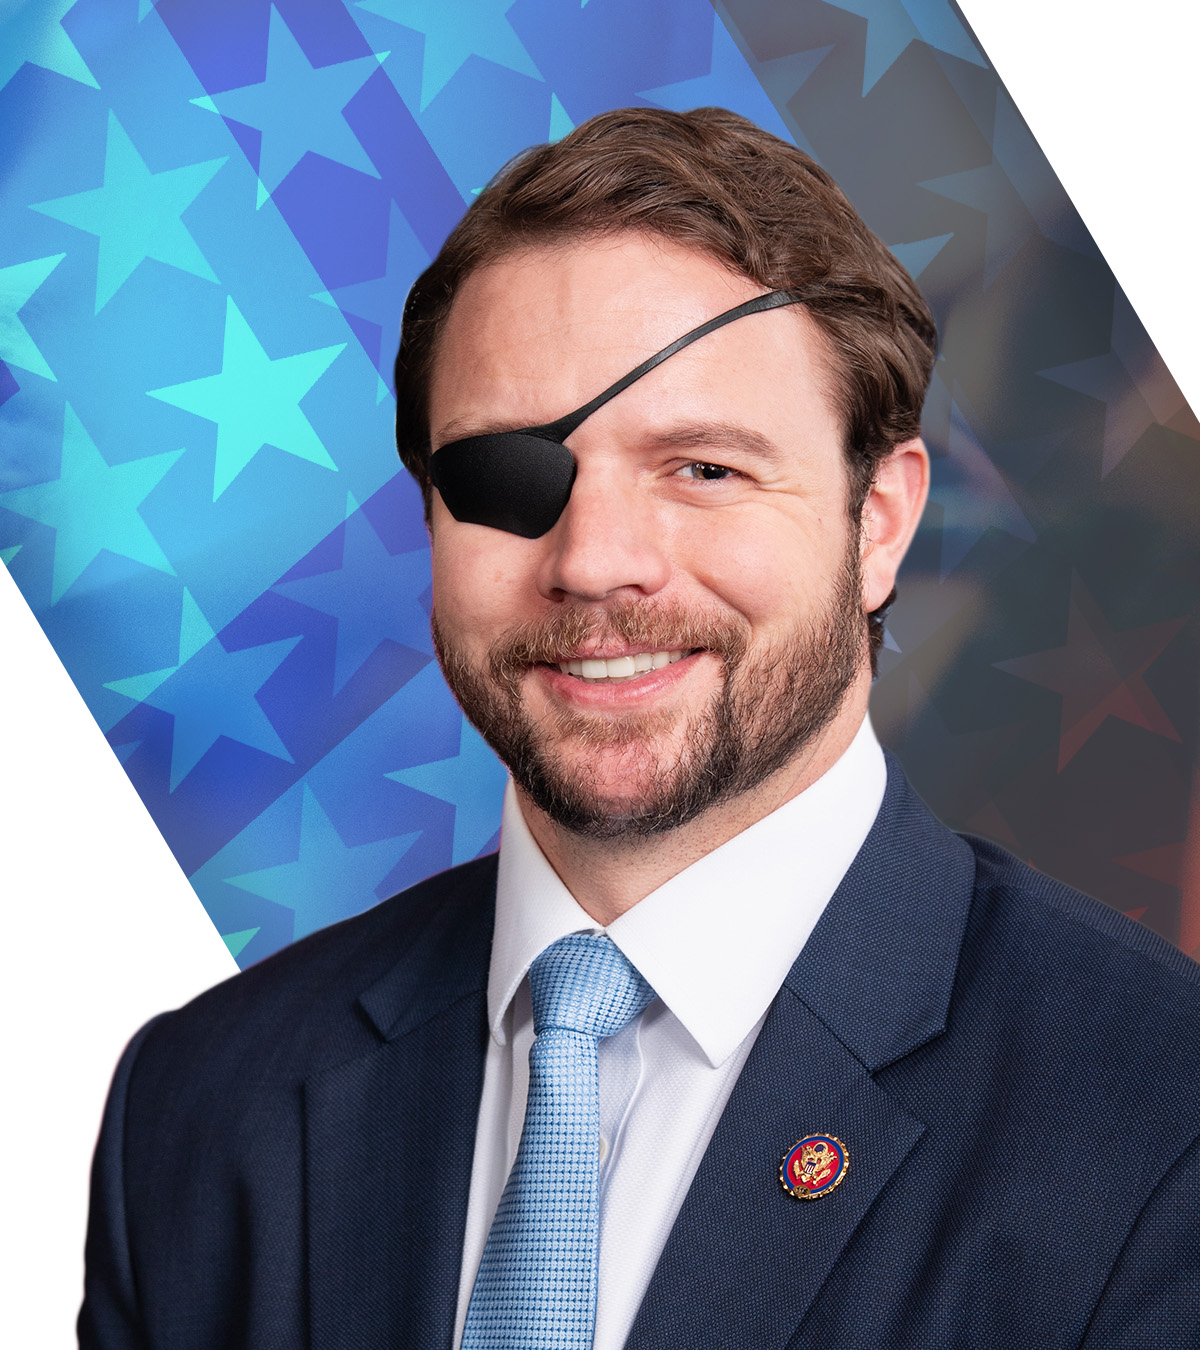 U.S. Representative, Texas